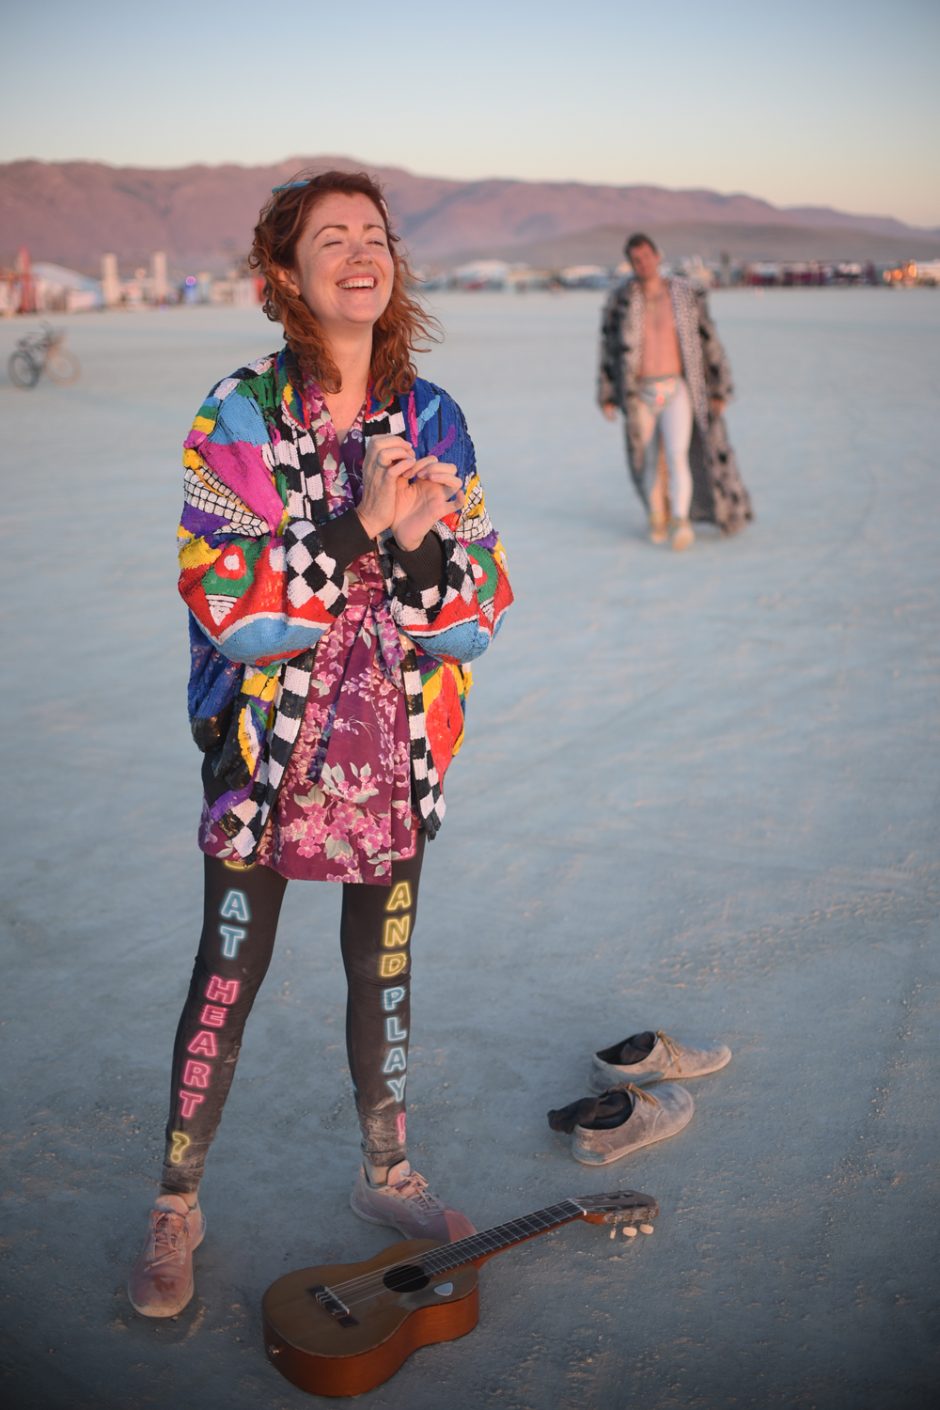 Iš „Burning Man“ grįžęs J. Didžiulis: dykumos utopija – tarsi jodinėjimas vienaragiu